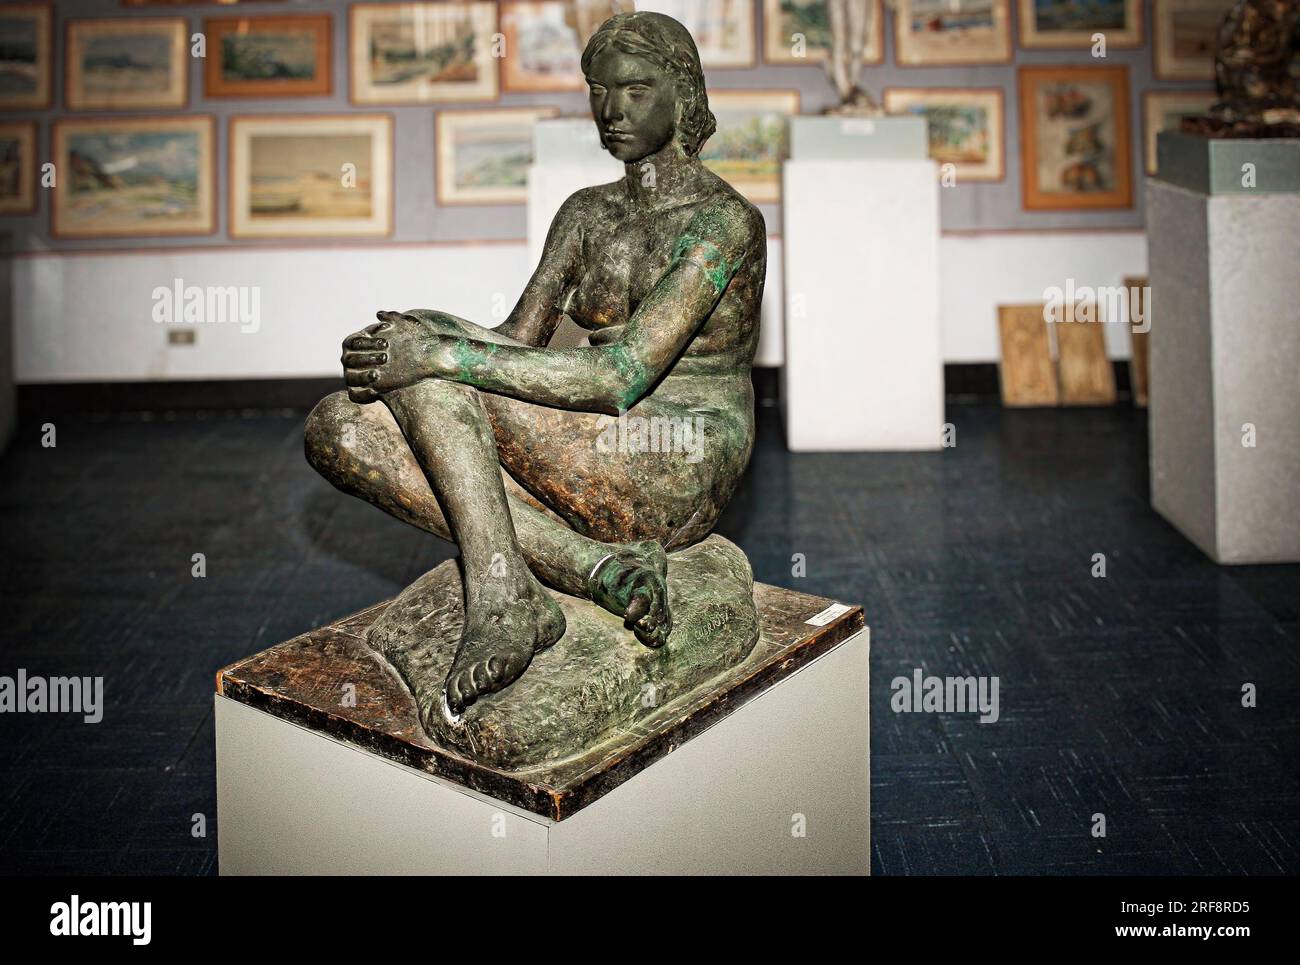 Italia Calabria Palmi la casa della cultura "Leonida Repaci" - gipsoteca Michele Guerrisi - Statua in bronzo Foto Stock